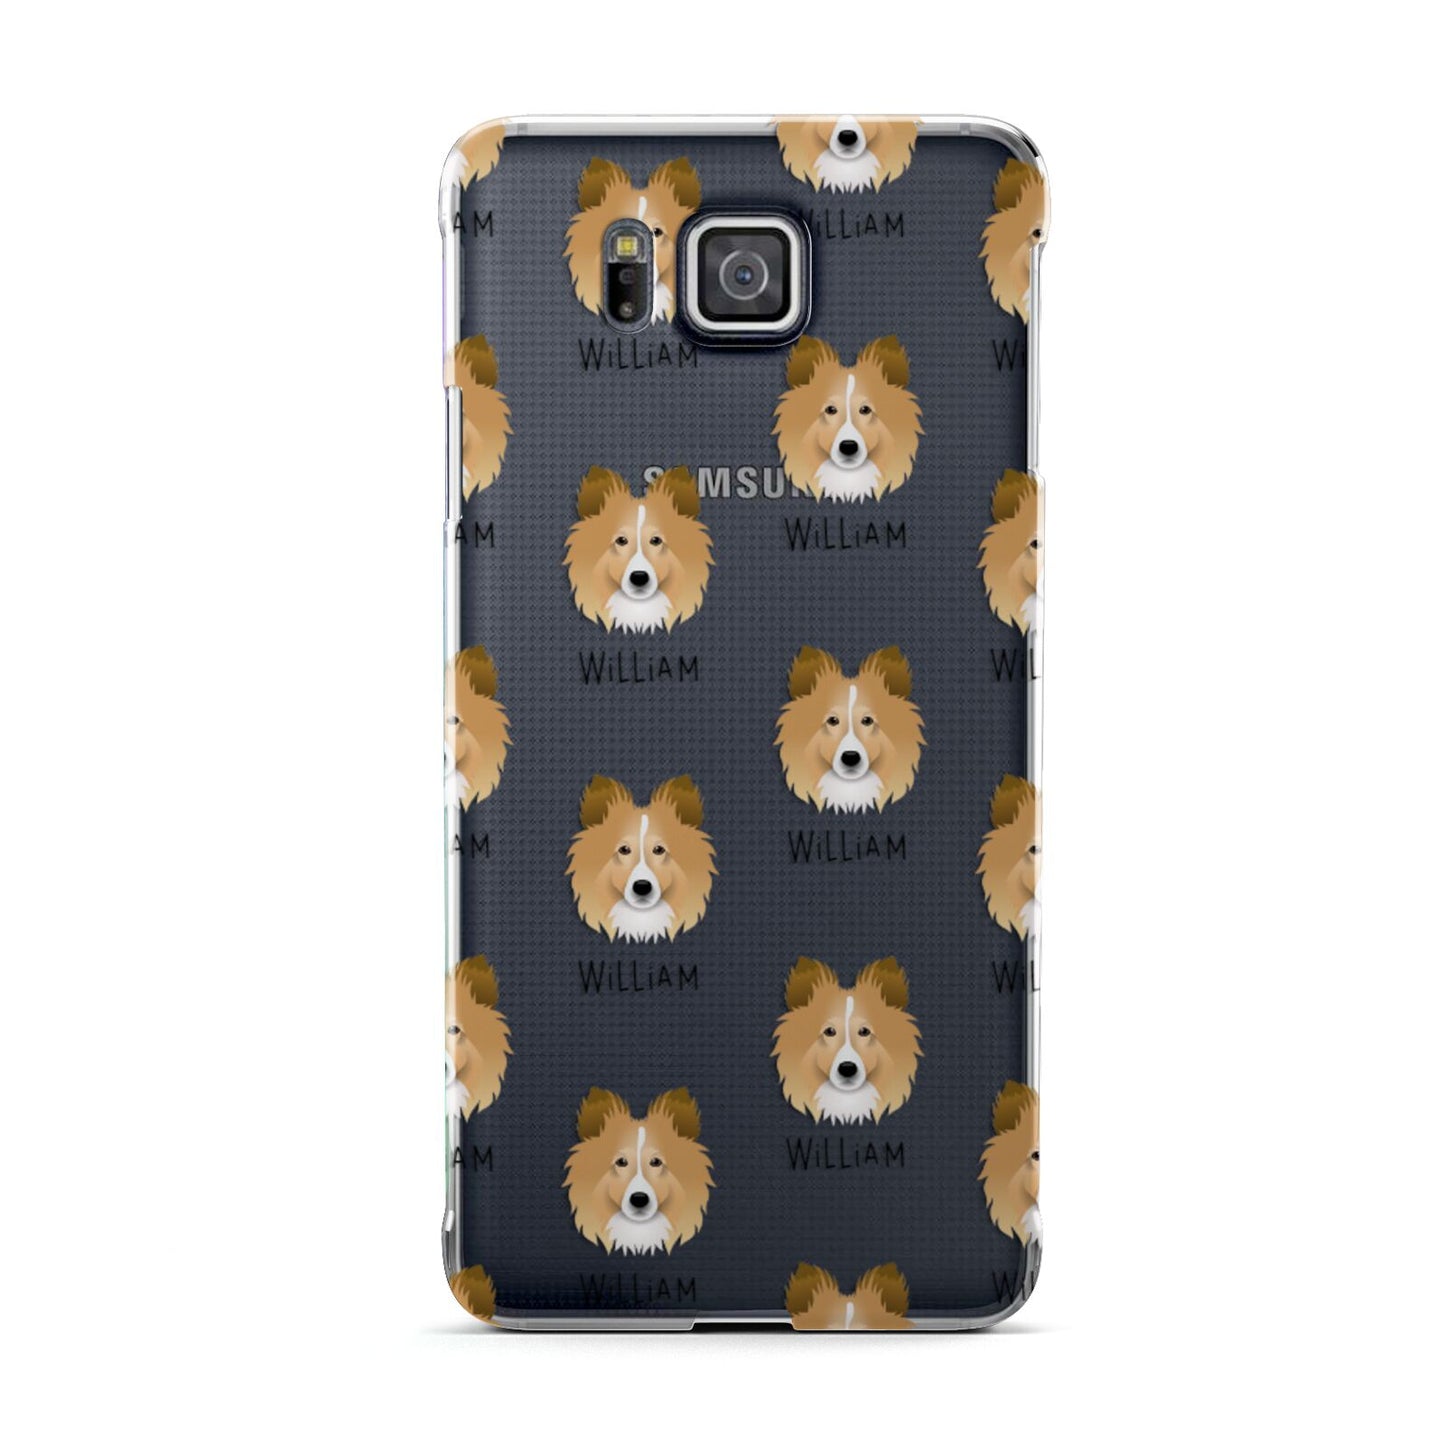 Shetland Sheepdog Icon with Name Samsung Galaxy Alpha Case